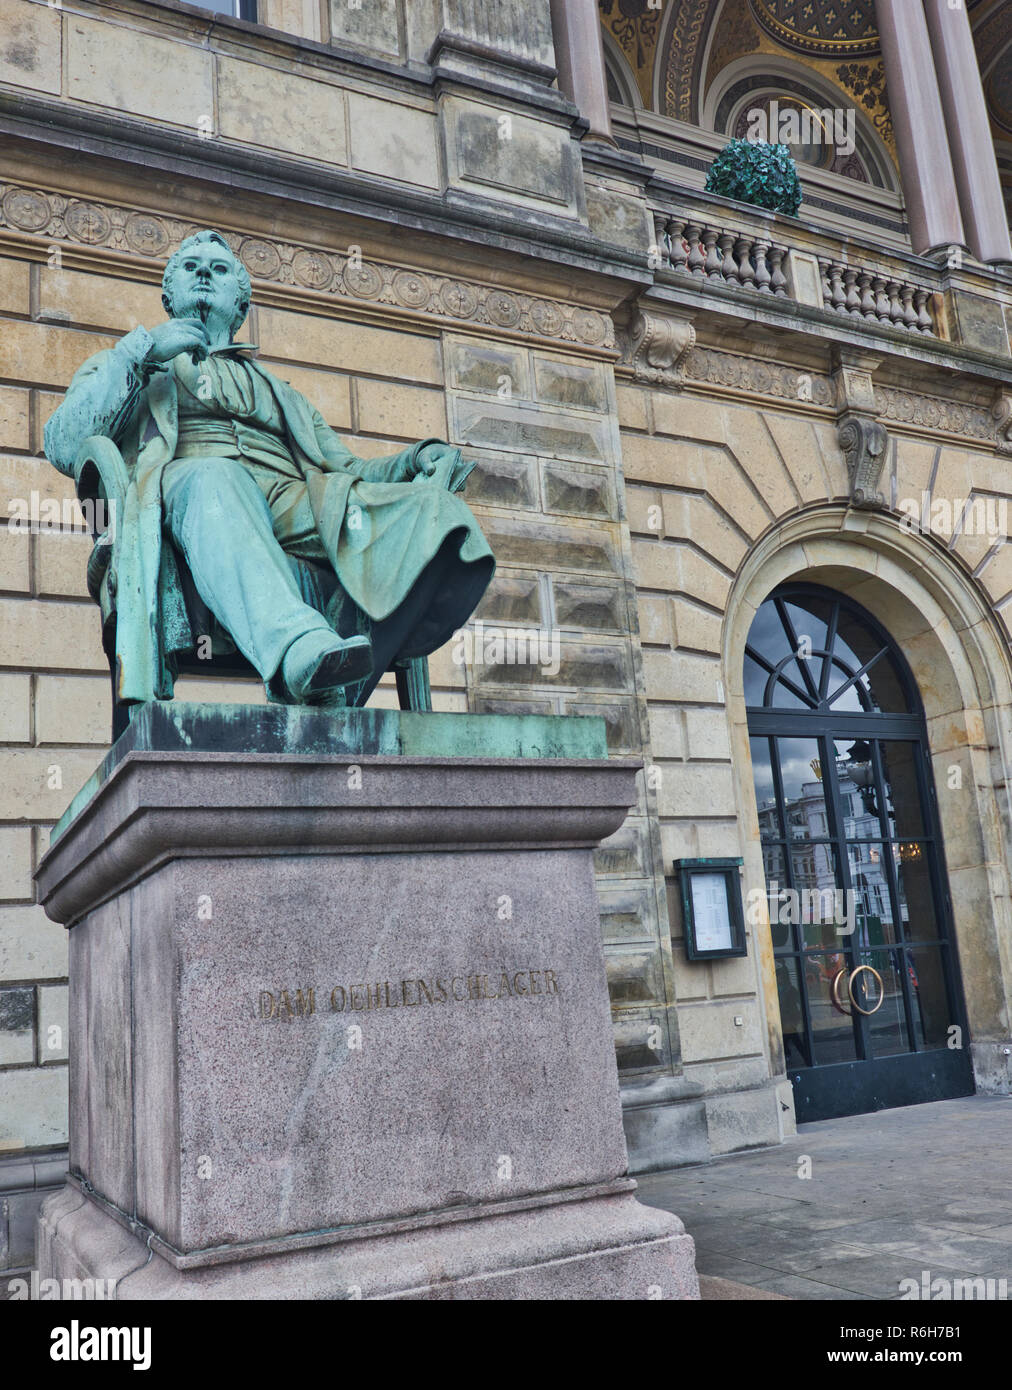 Seduto in bronzo scultura di Adam Oehlenschlager al di fuori del Royal Danish Theatre (Kongelige Teater), Copenhagen, Danimarca e Scandinavia Foto Stock